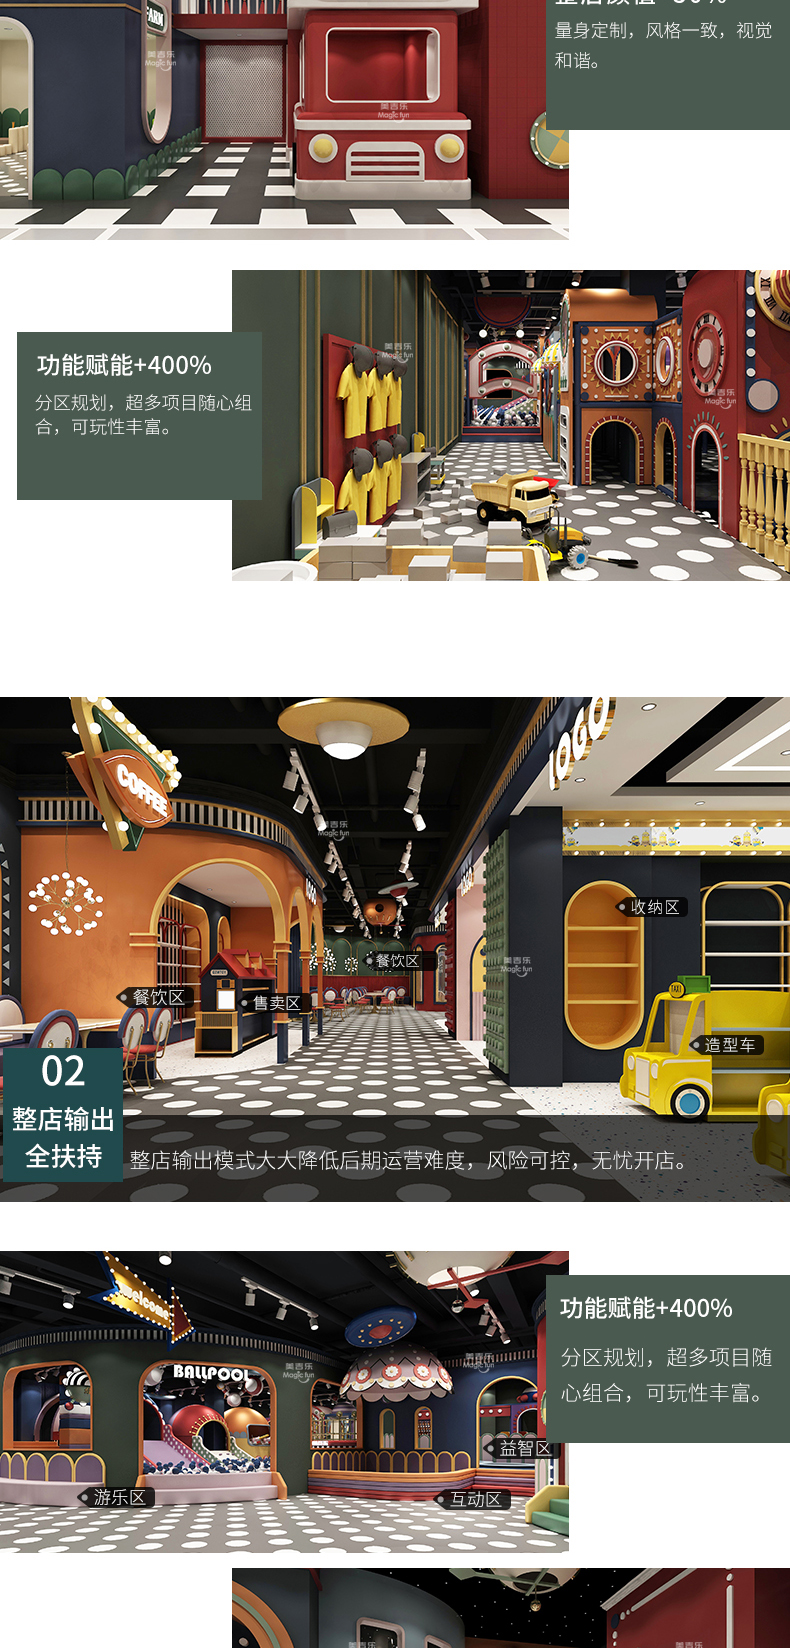 武汉游乐场室内设备 淘气堡儿童乐园 大型亲子餐厅 3